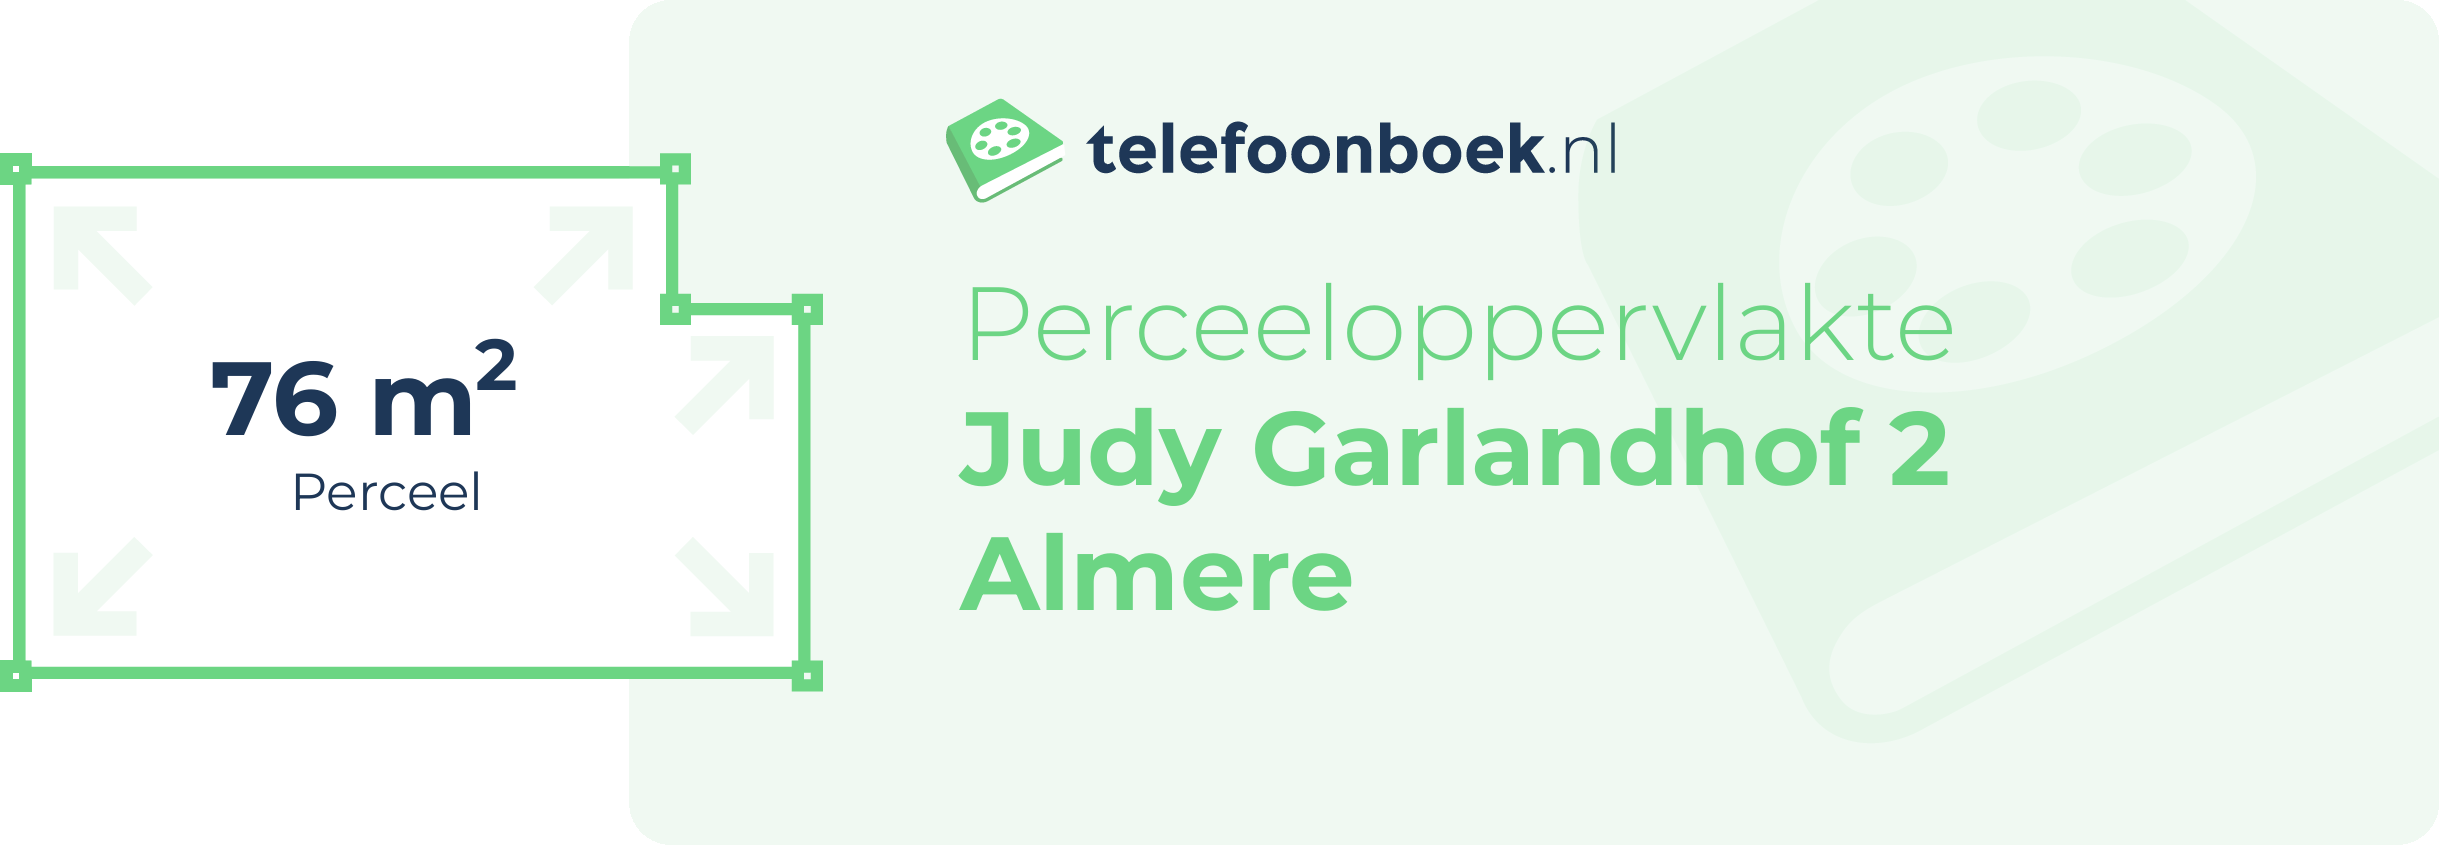 Perceeloppervlakte Judy Garlandhof 2 Almere